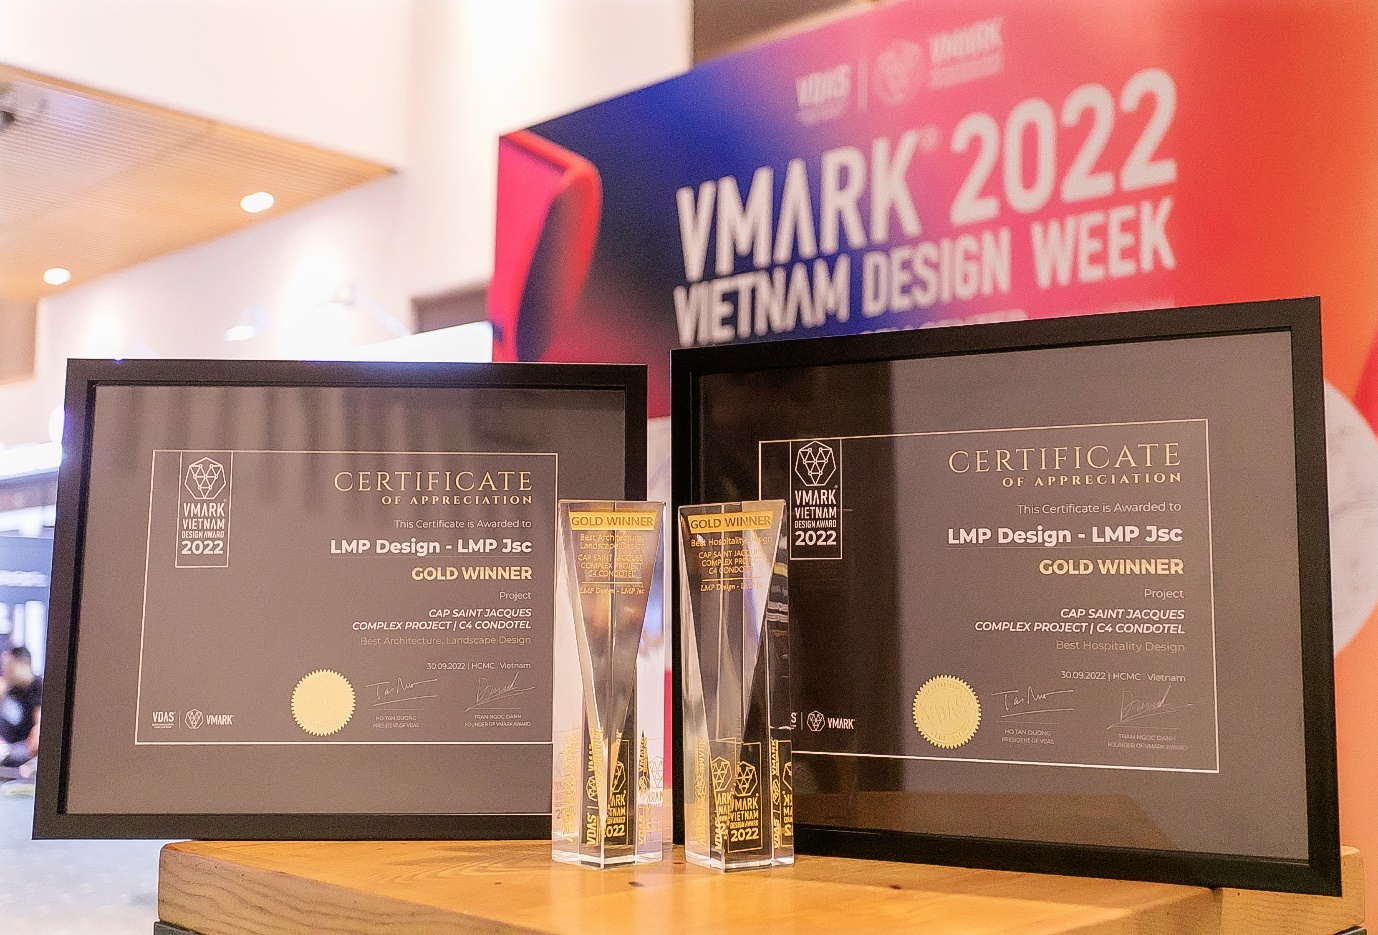 LMP Design giành 2 giải vàng danh giá tại VMARK 2022-2